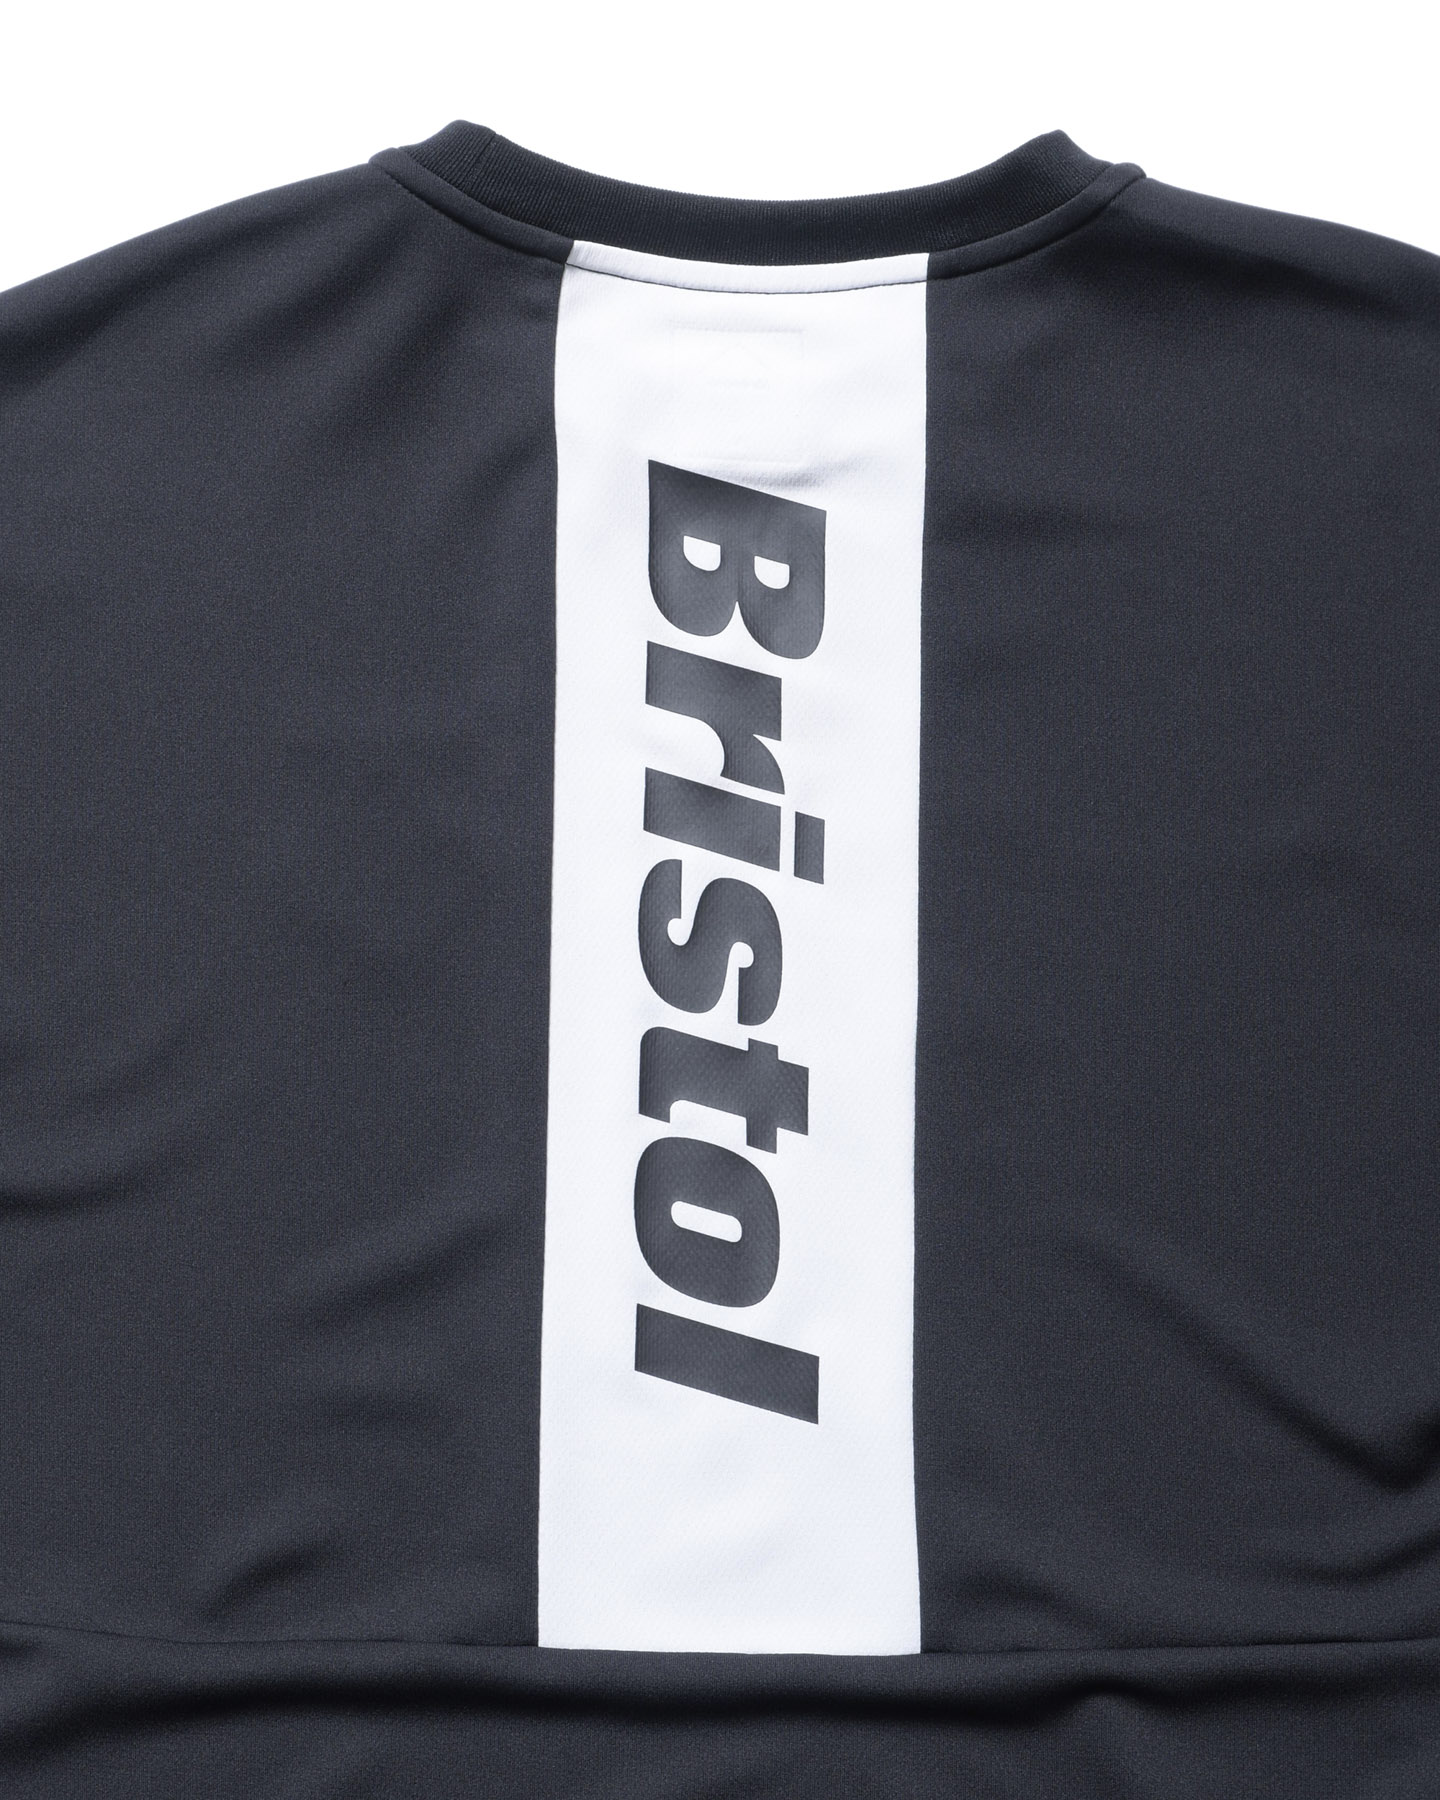 Bristol    ロンT  ブラック袖ロゴ　Sサイズ（メンズ）